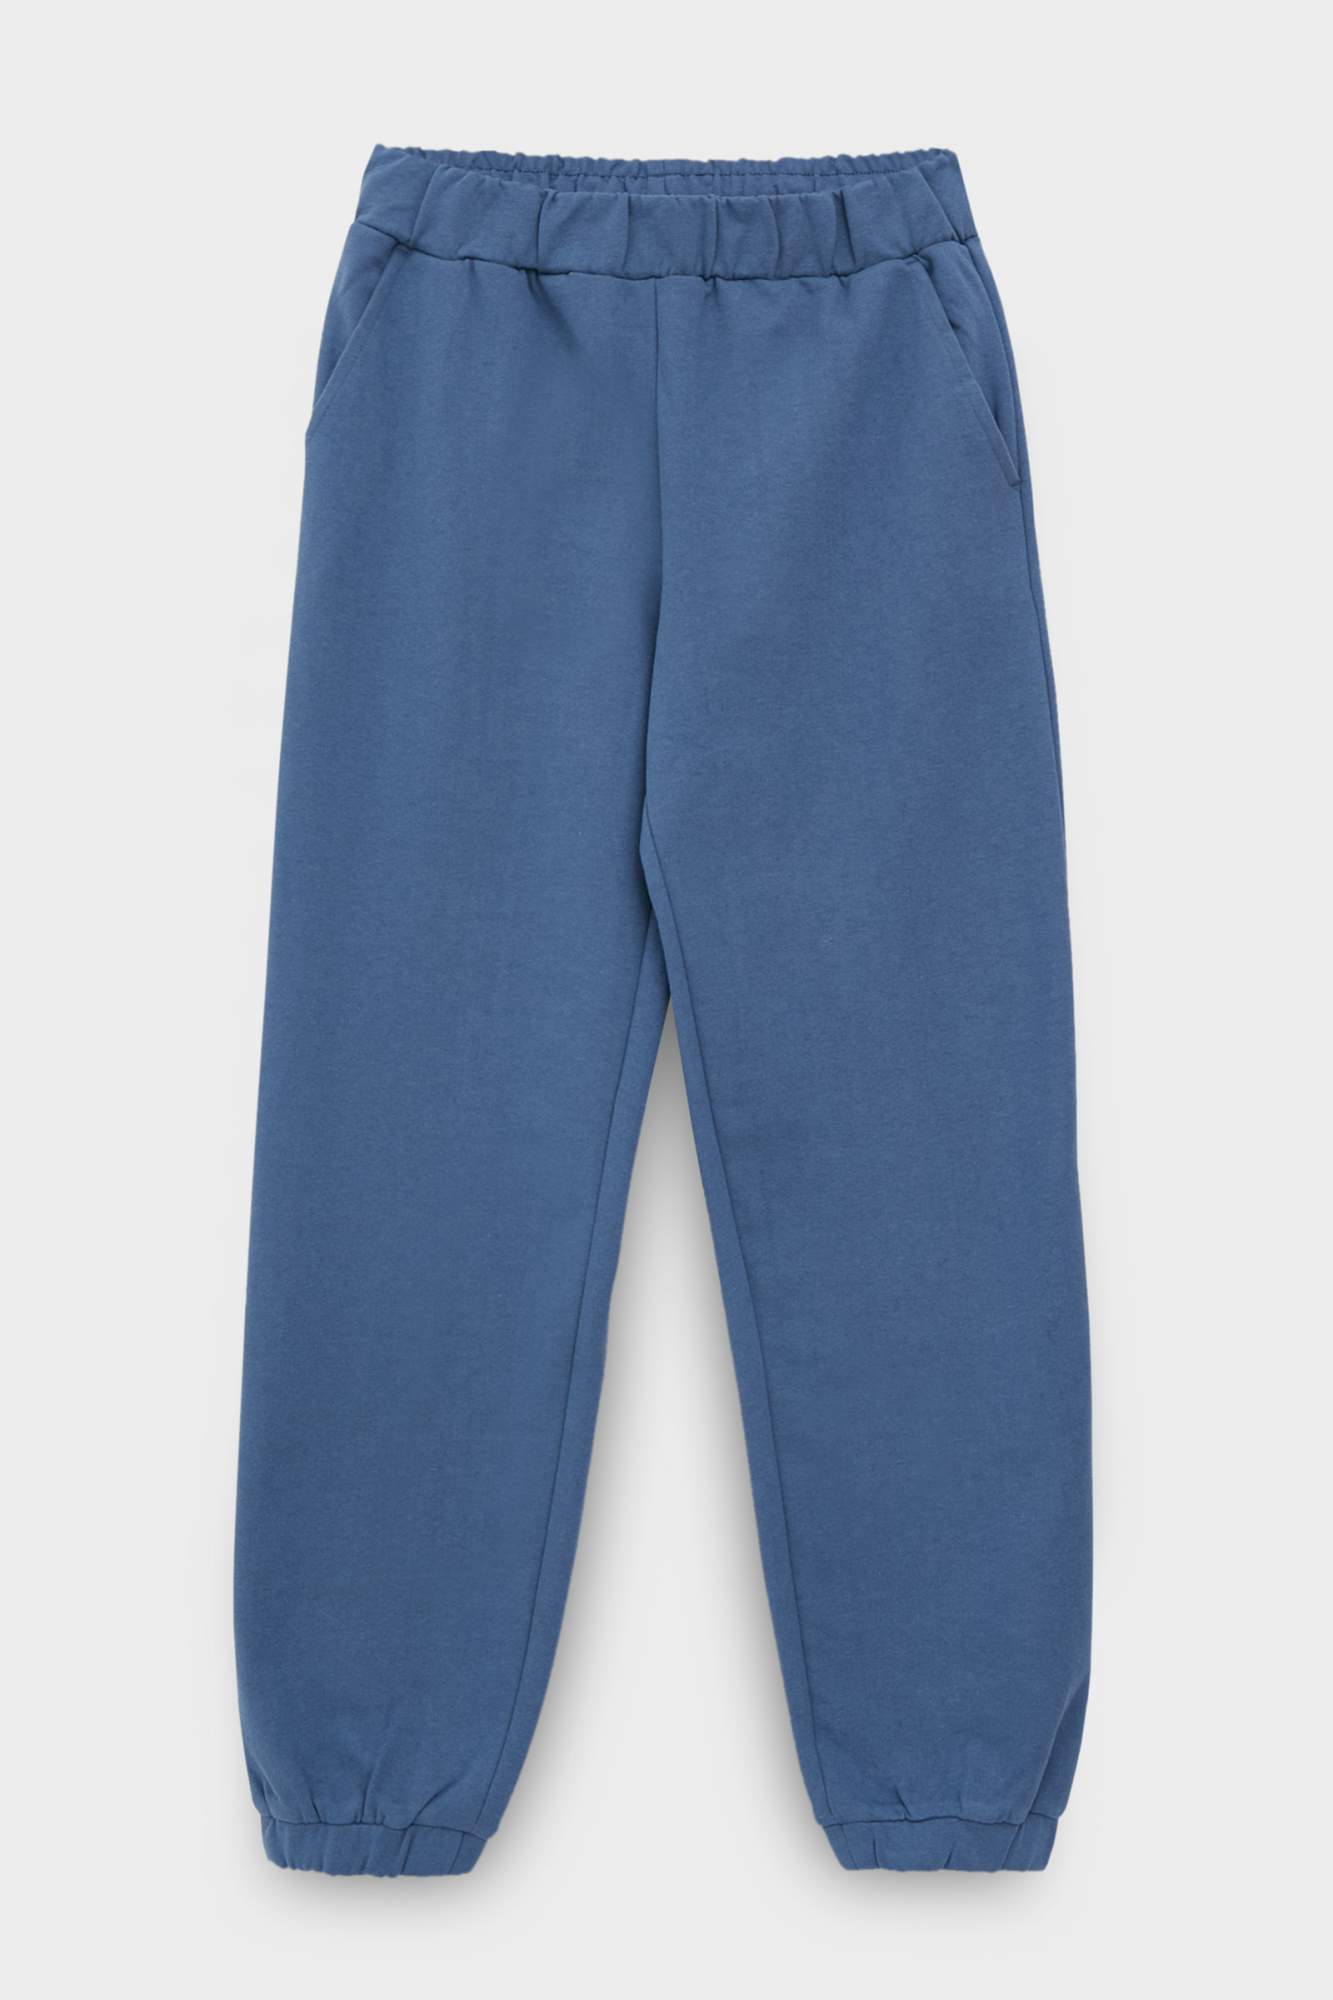 Спортивные брюки женские Finn Flare FBC13031 синие XL